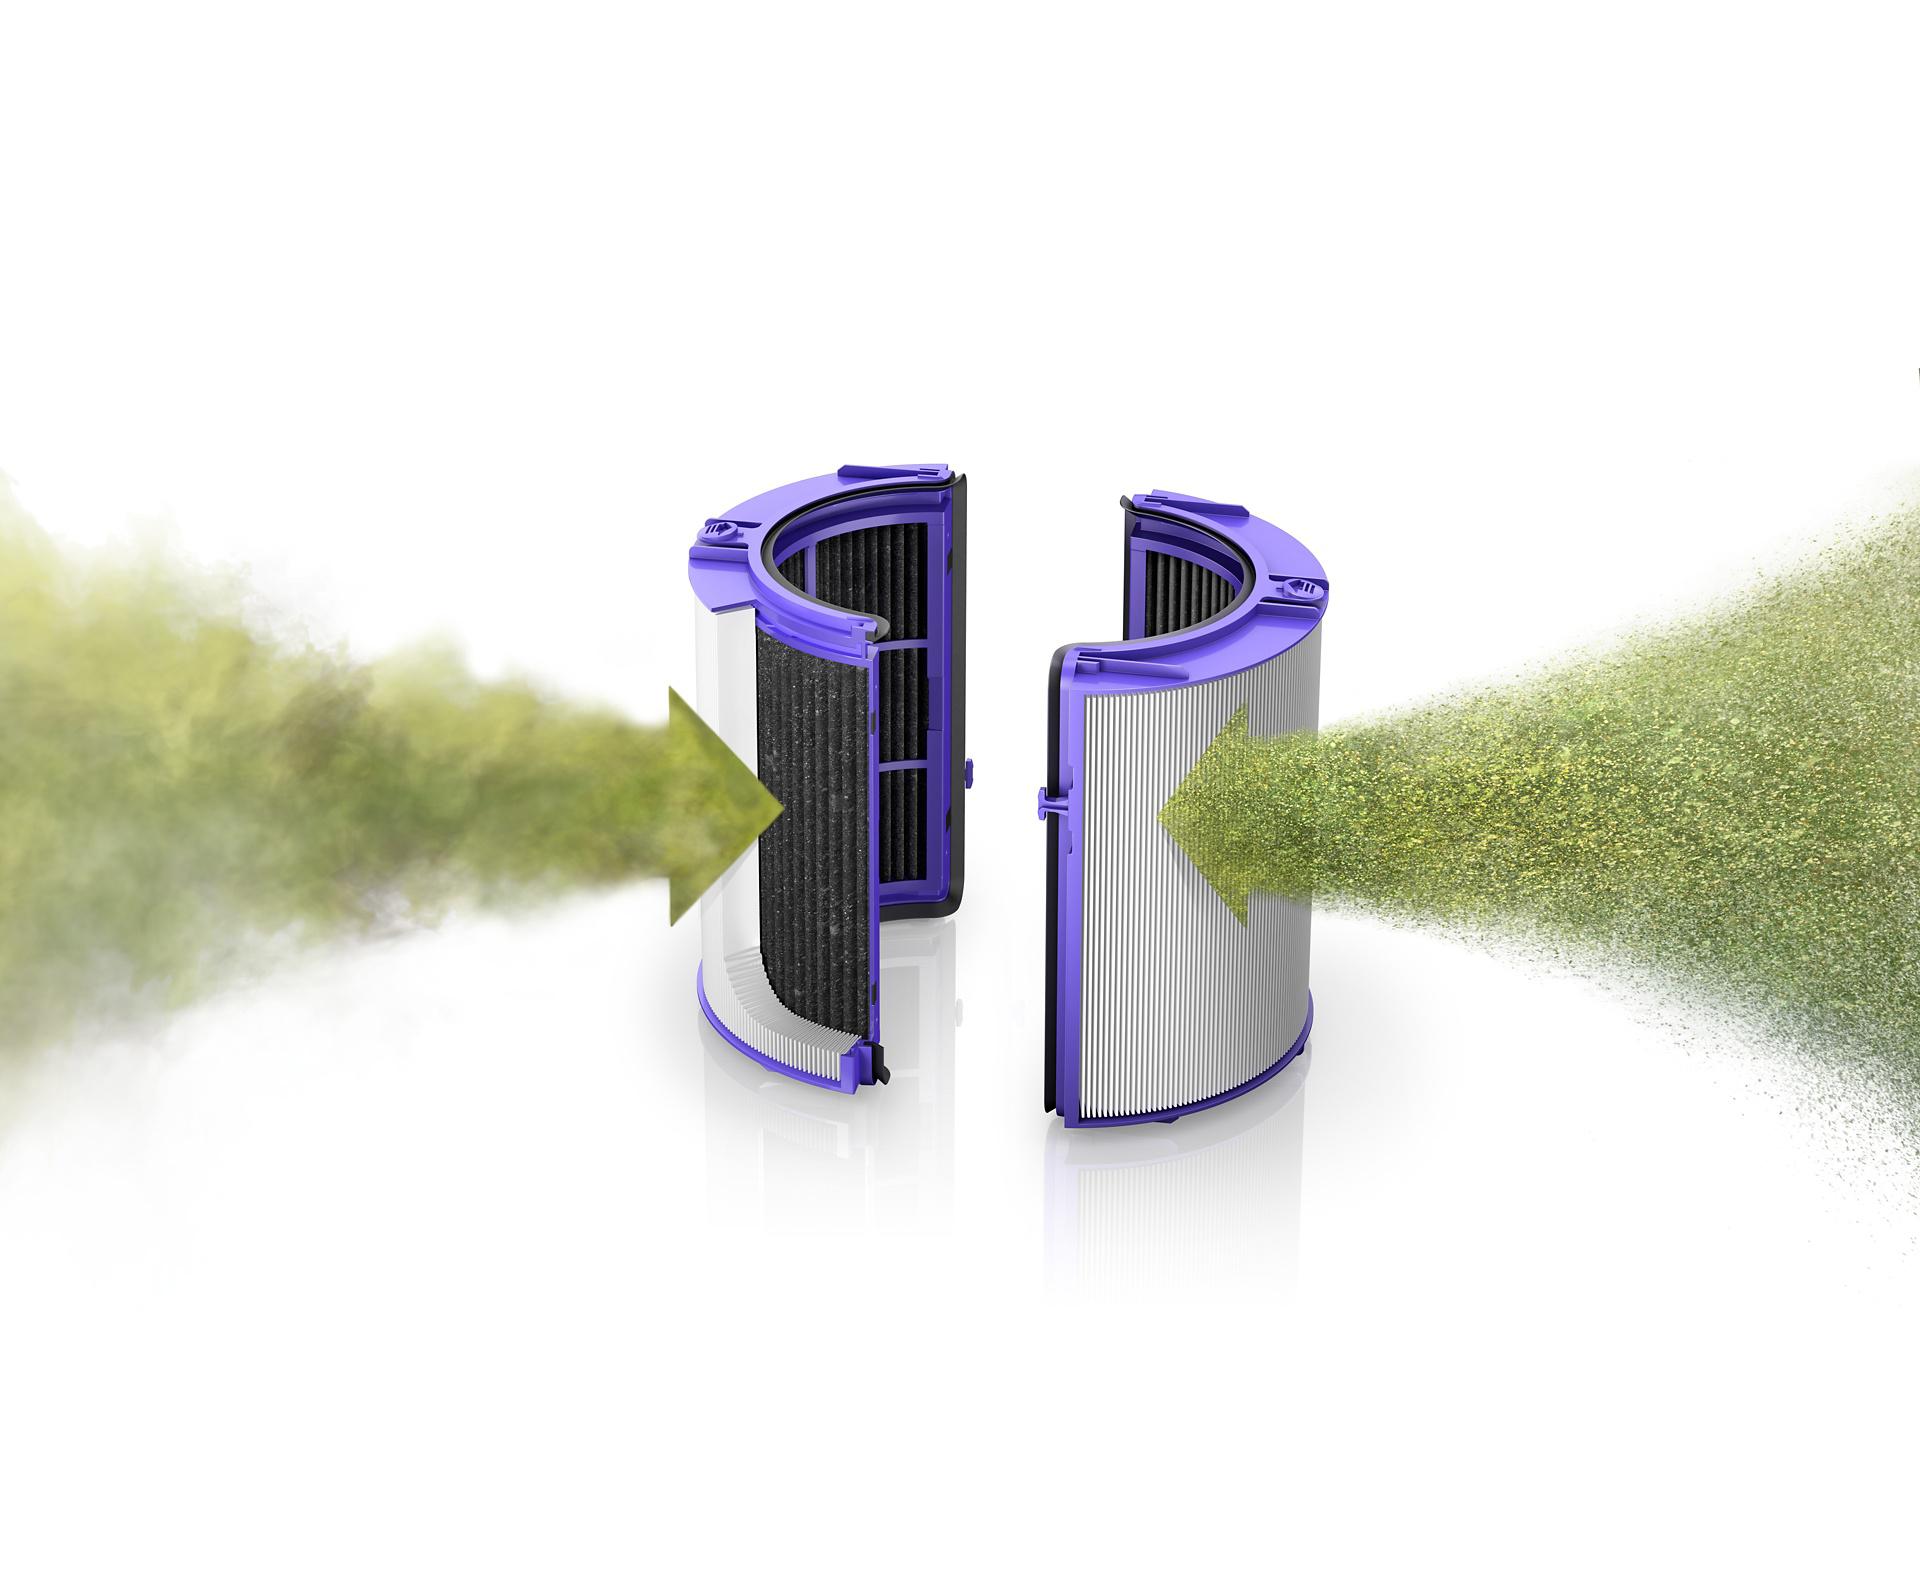 Filtr HEPA oczyszczacza powietrza wychwytujący i zatrzymujący cząsteczki zanieczyszczeń powietrza